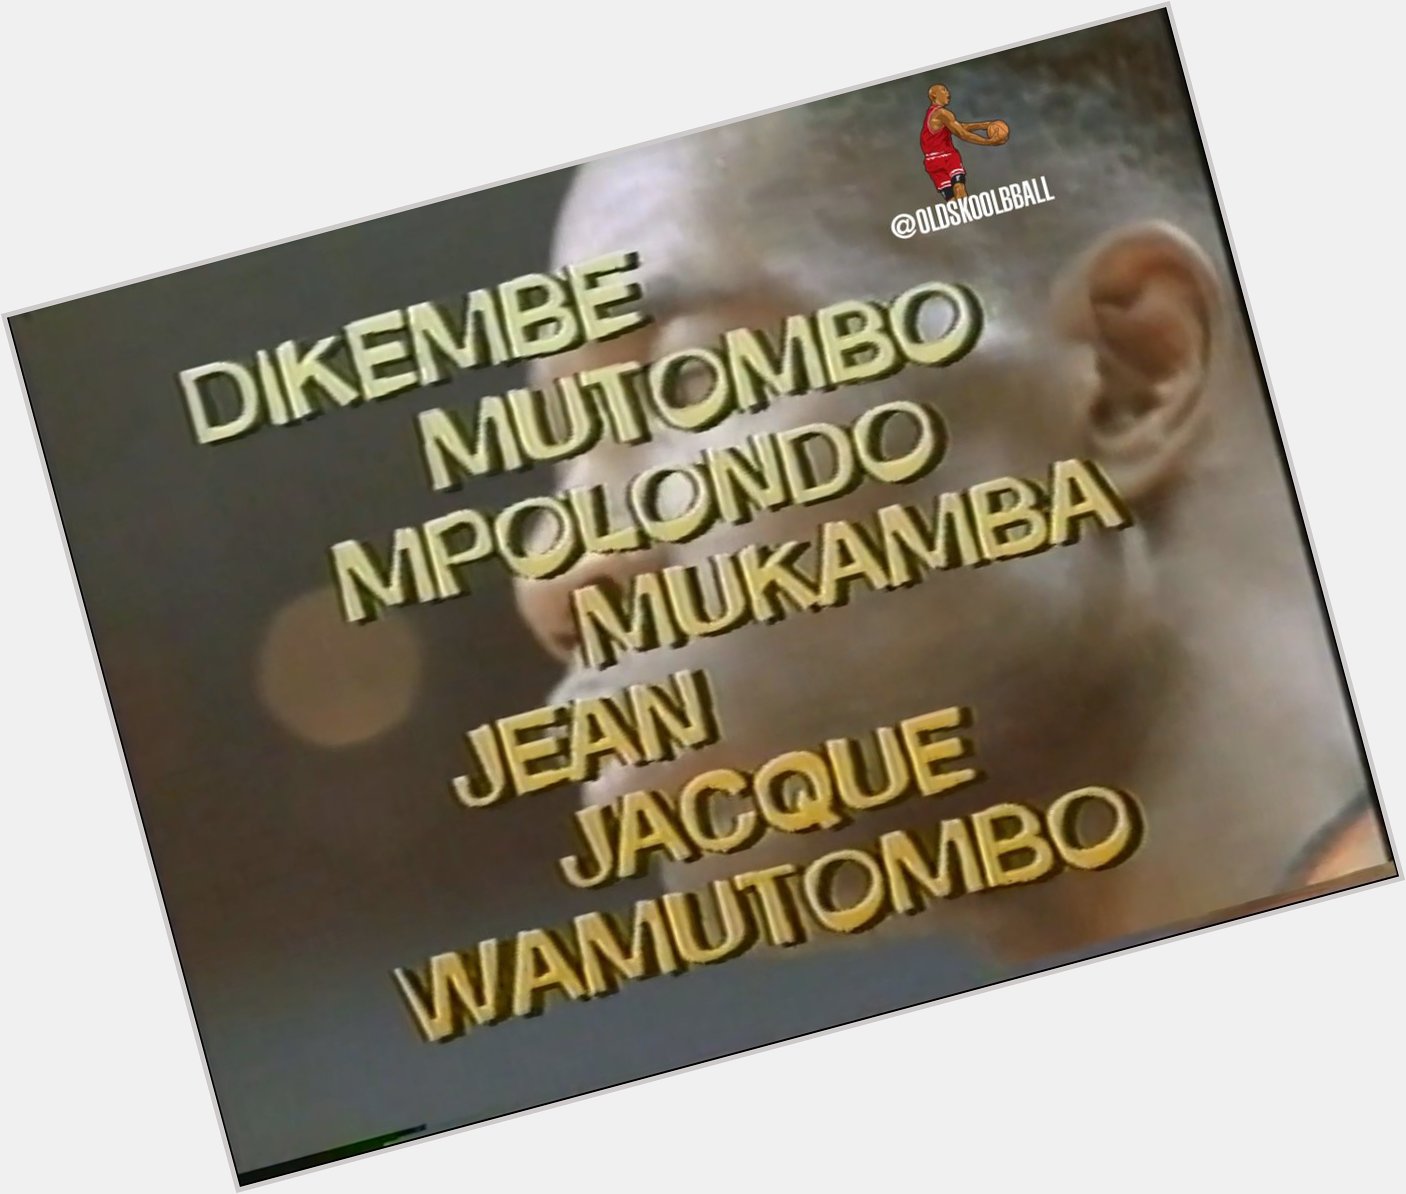 Happy birthday Dikembe Mutombo Mpolondo Mukamba Jean Jacque Wamutombo  